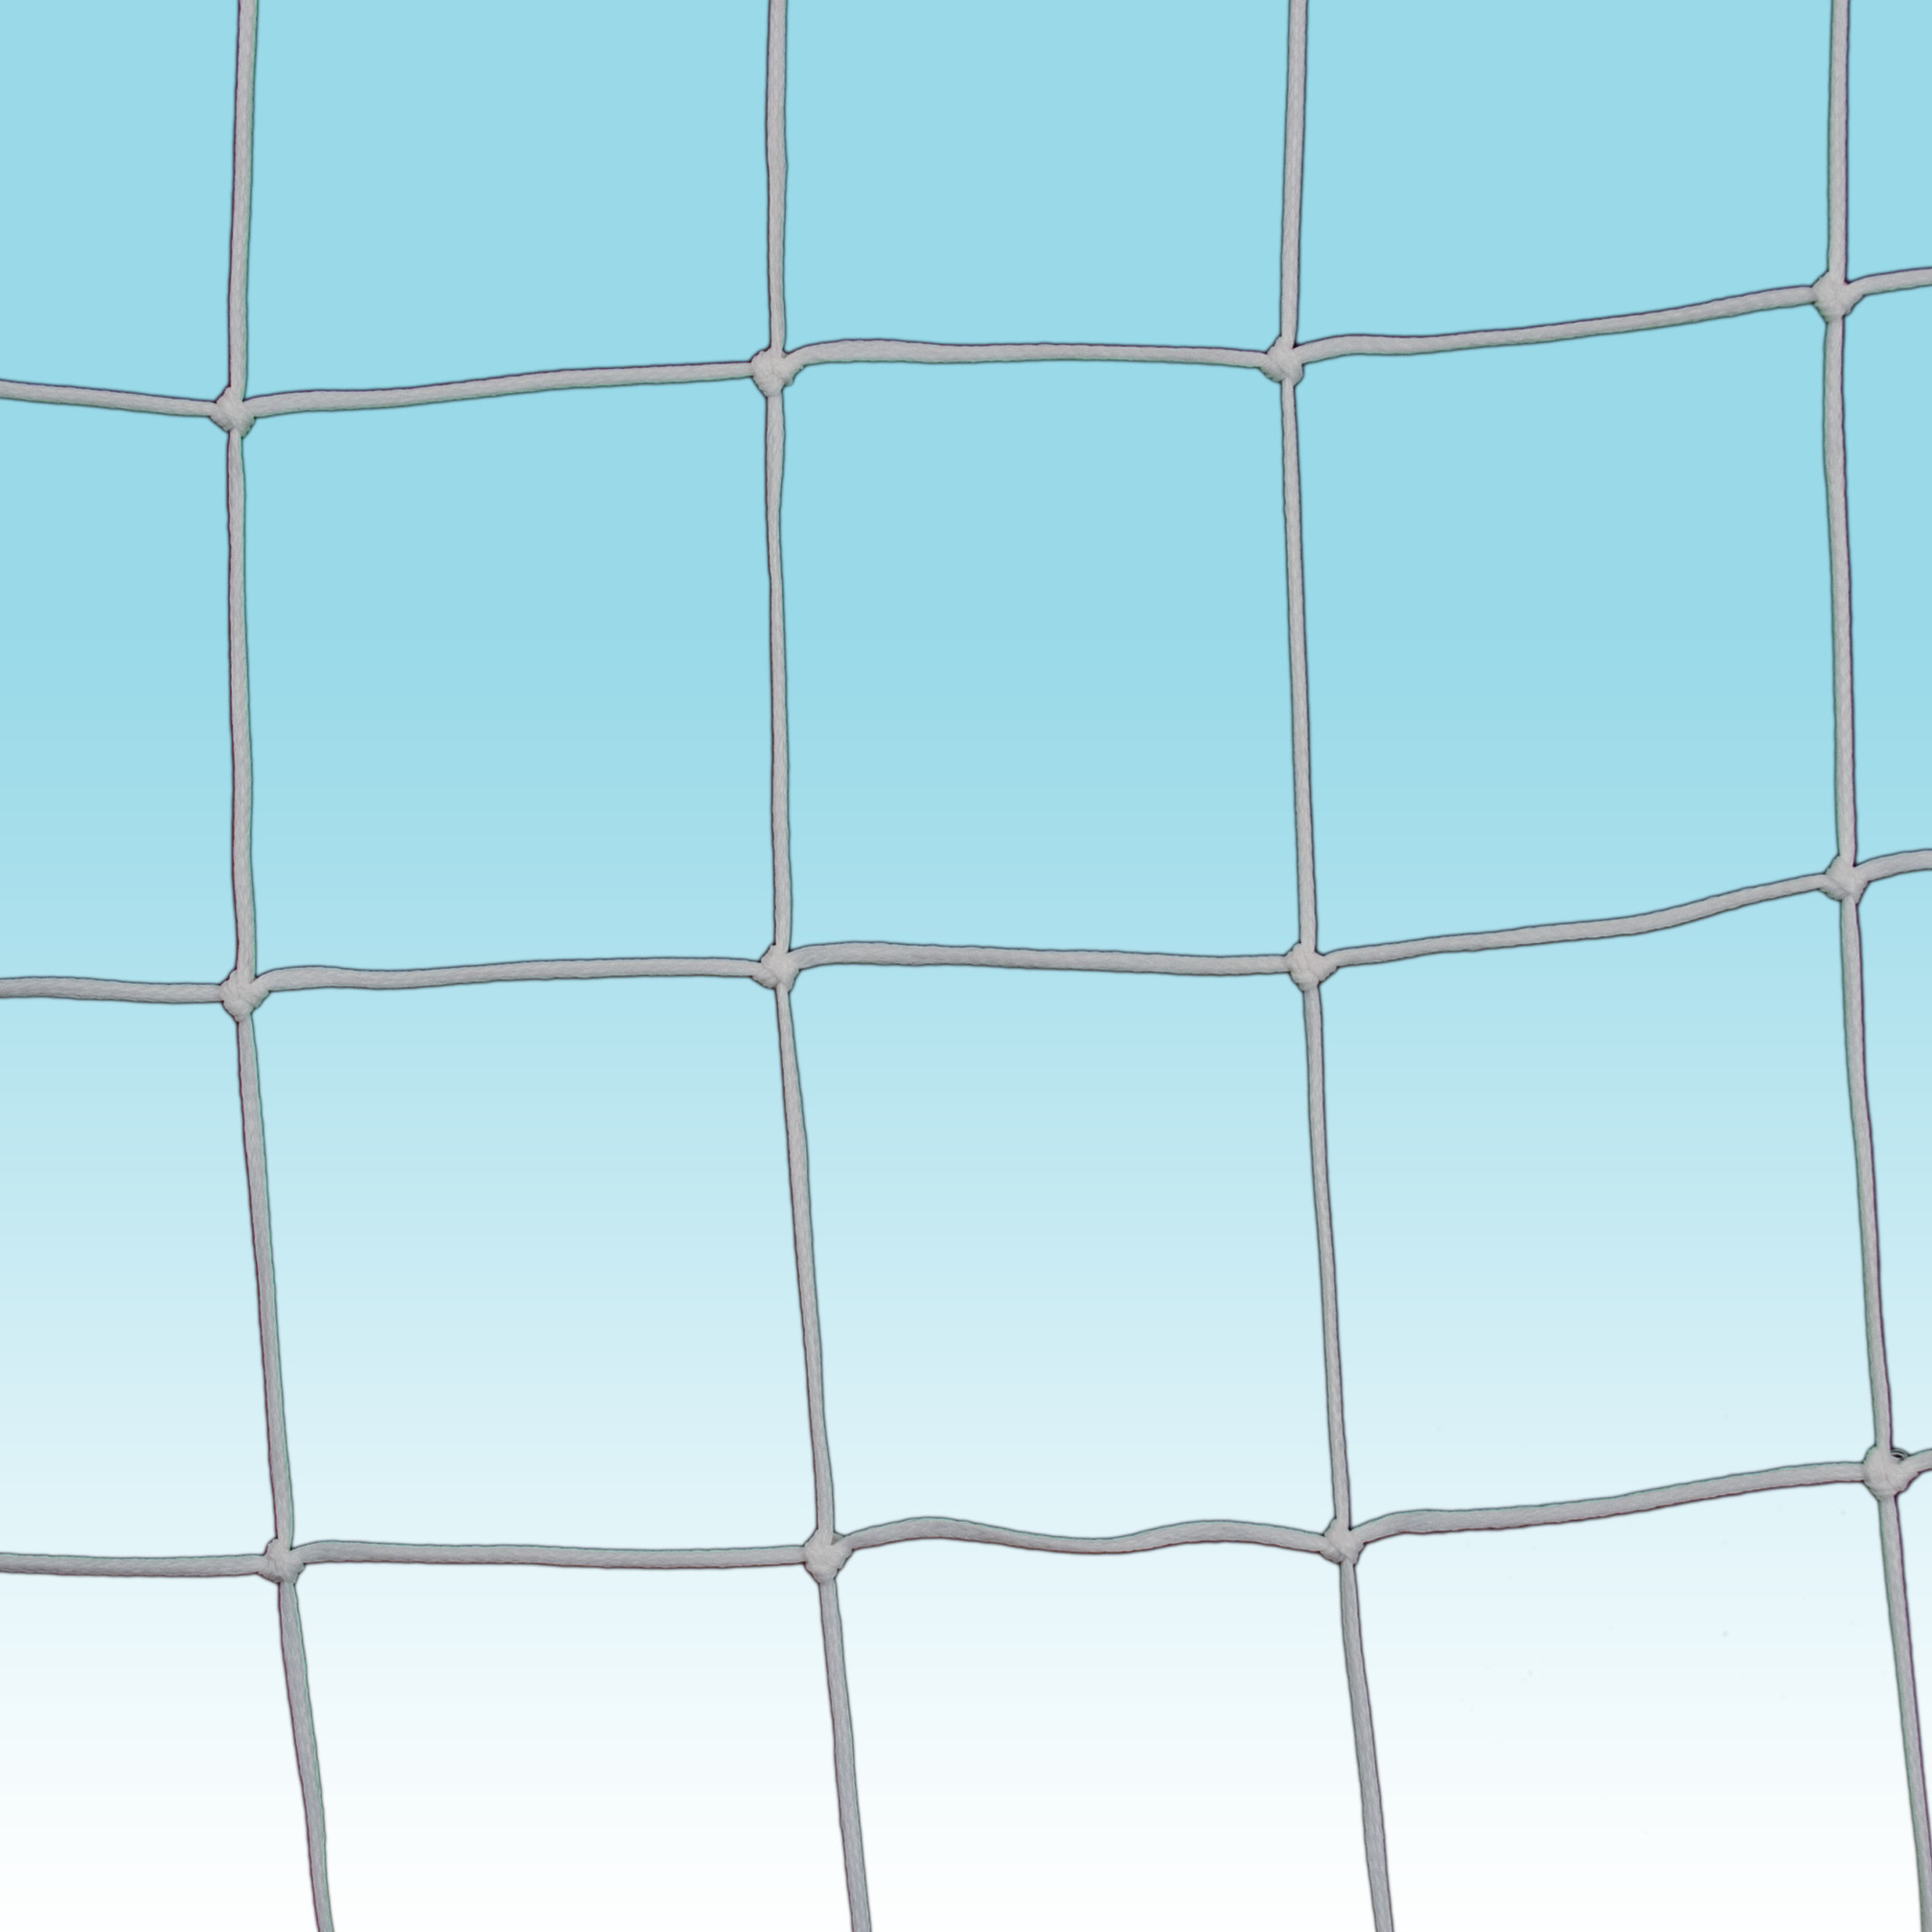 Net for mini football goal, 250x100 cm